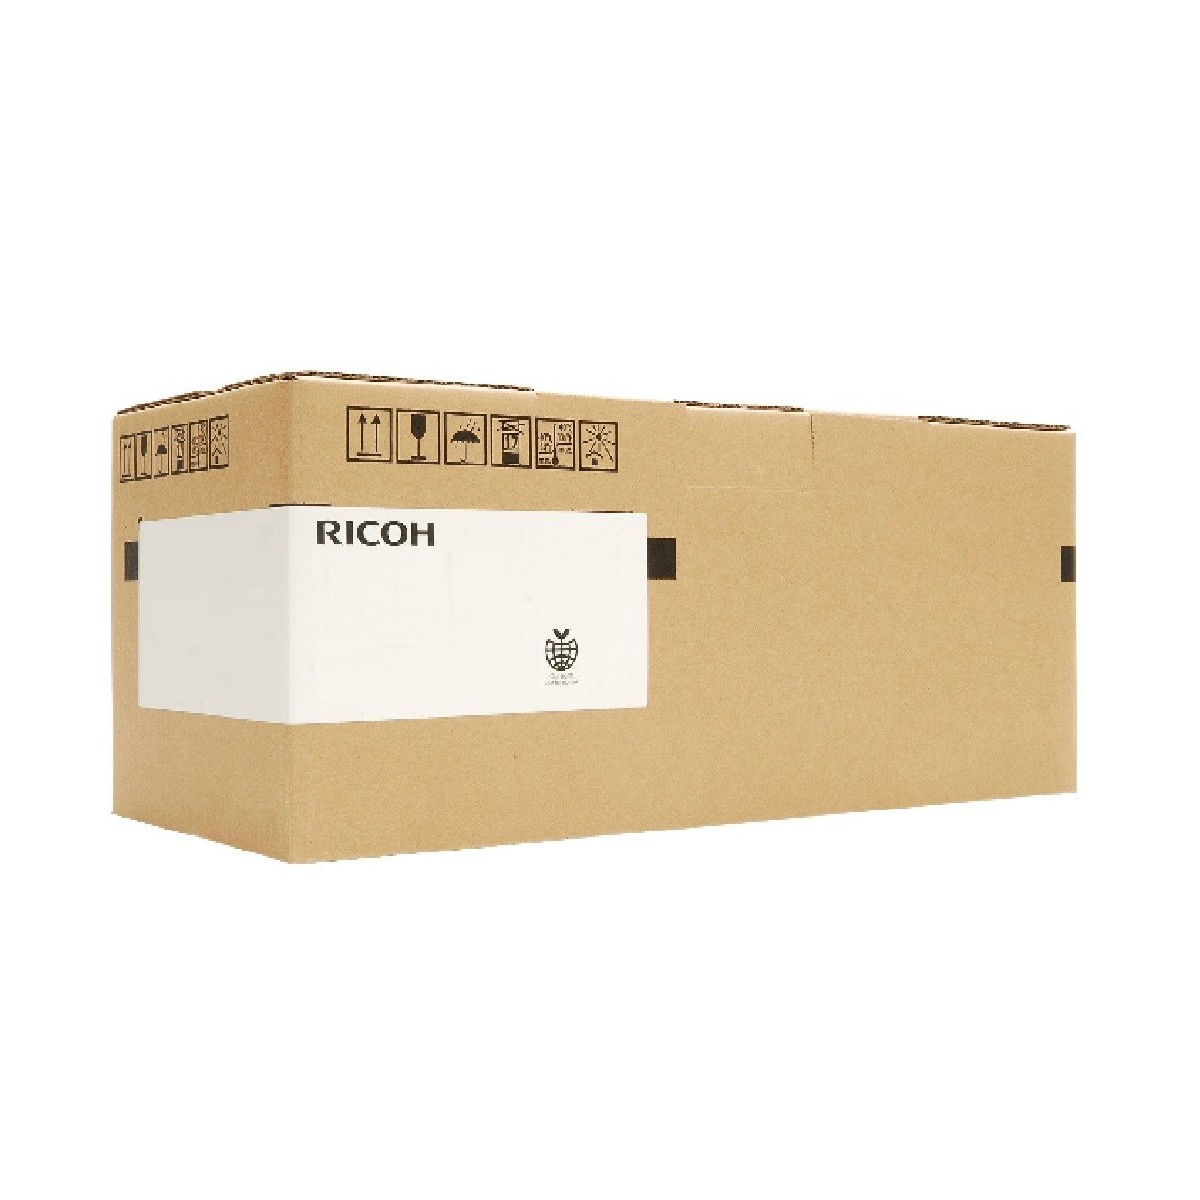 Ricoh 400835 - 1 pc(s) - Duplex unit